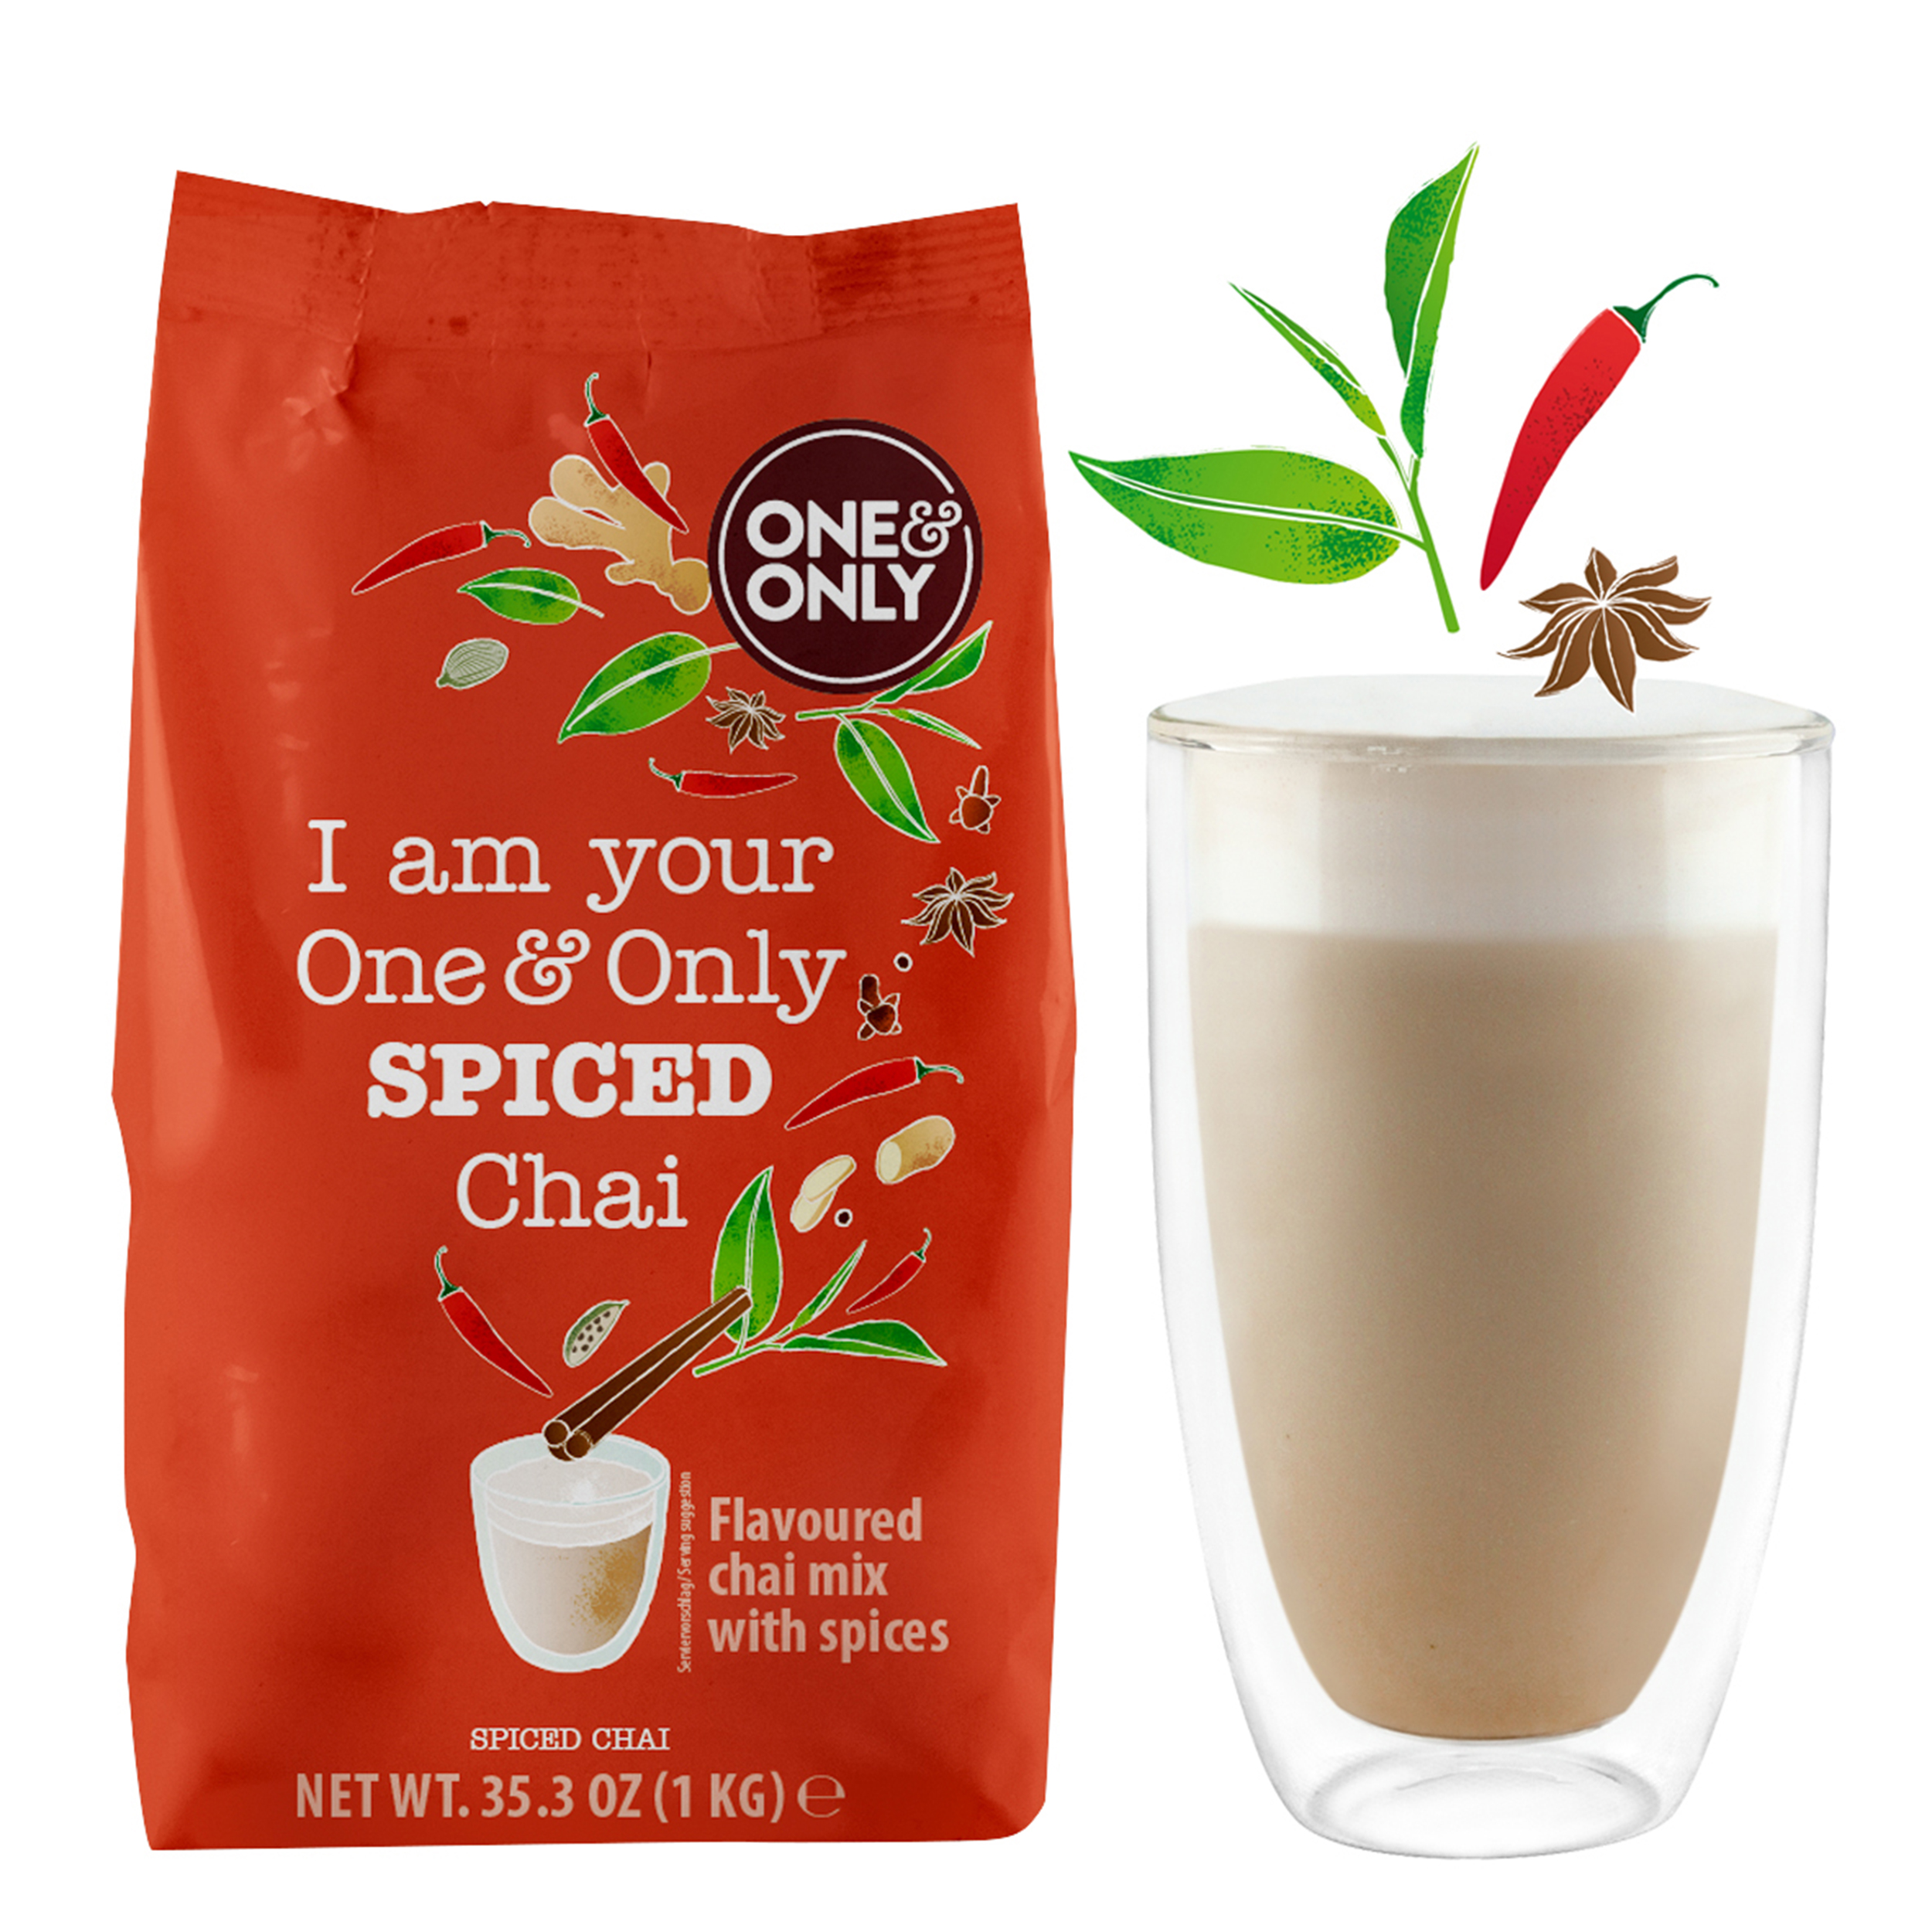 Spiced Chai